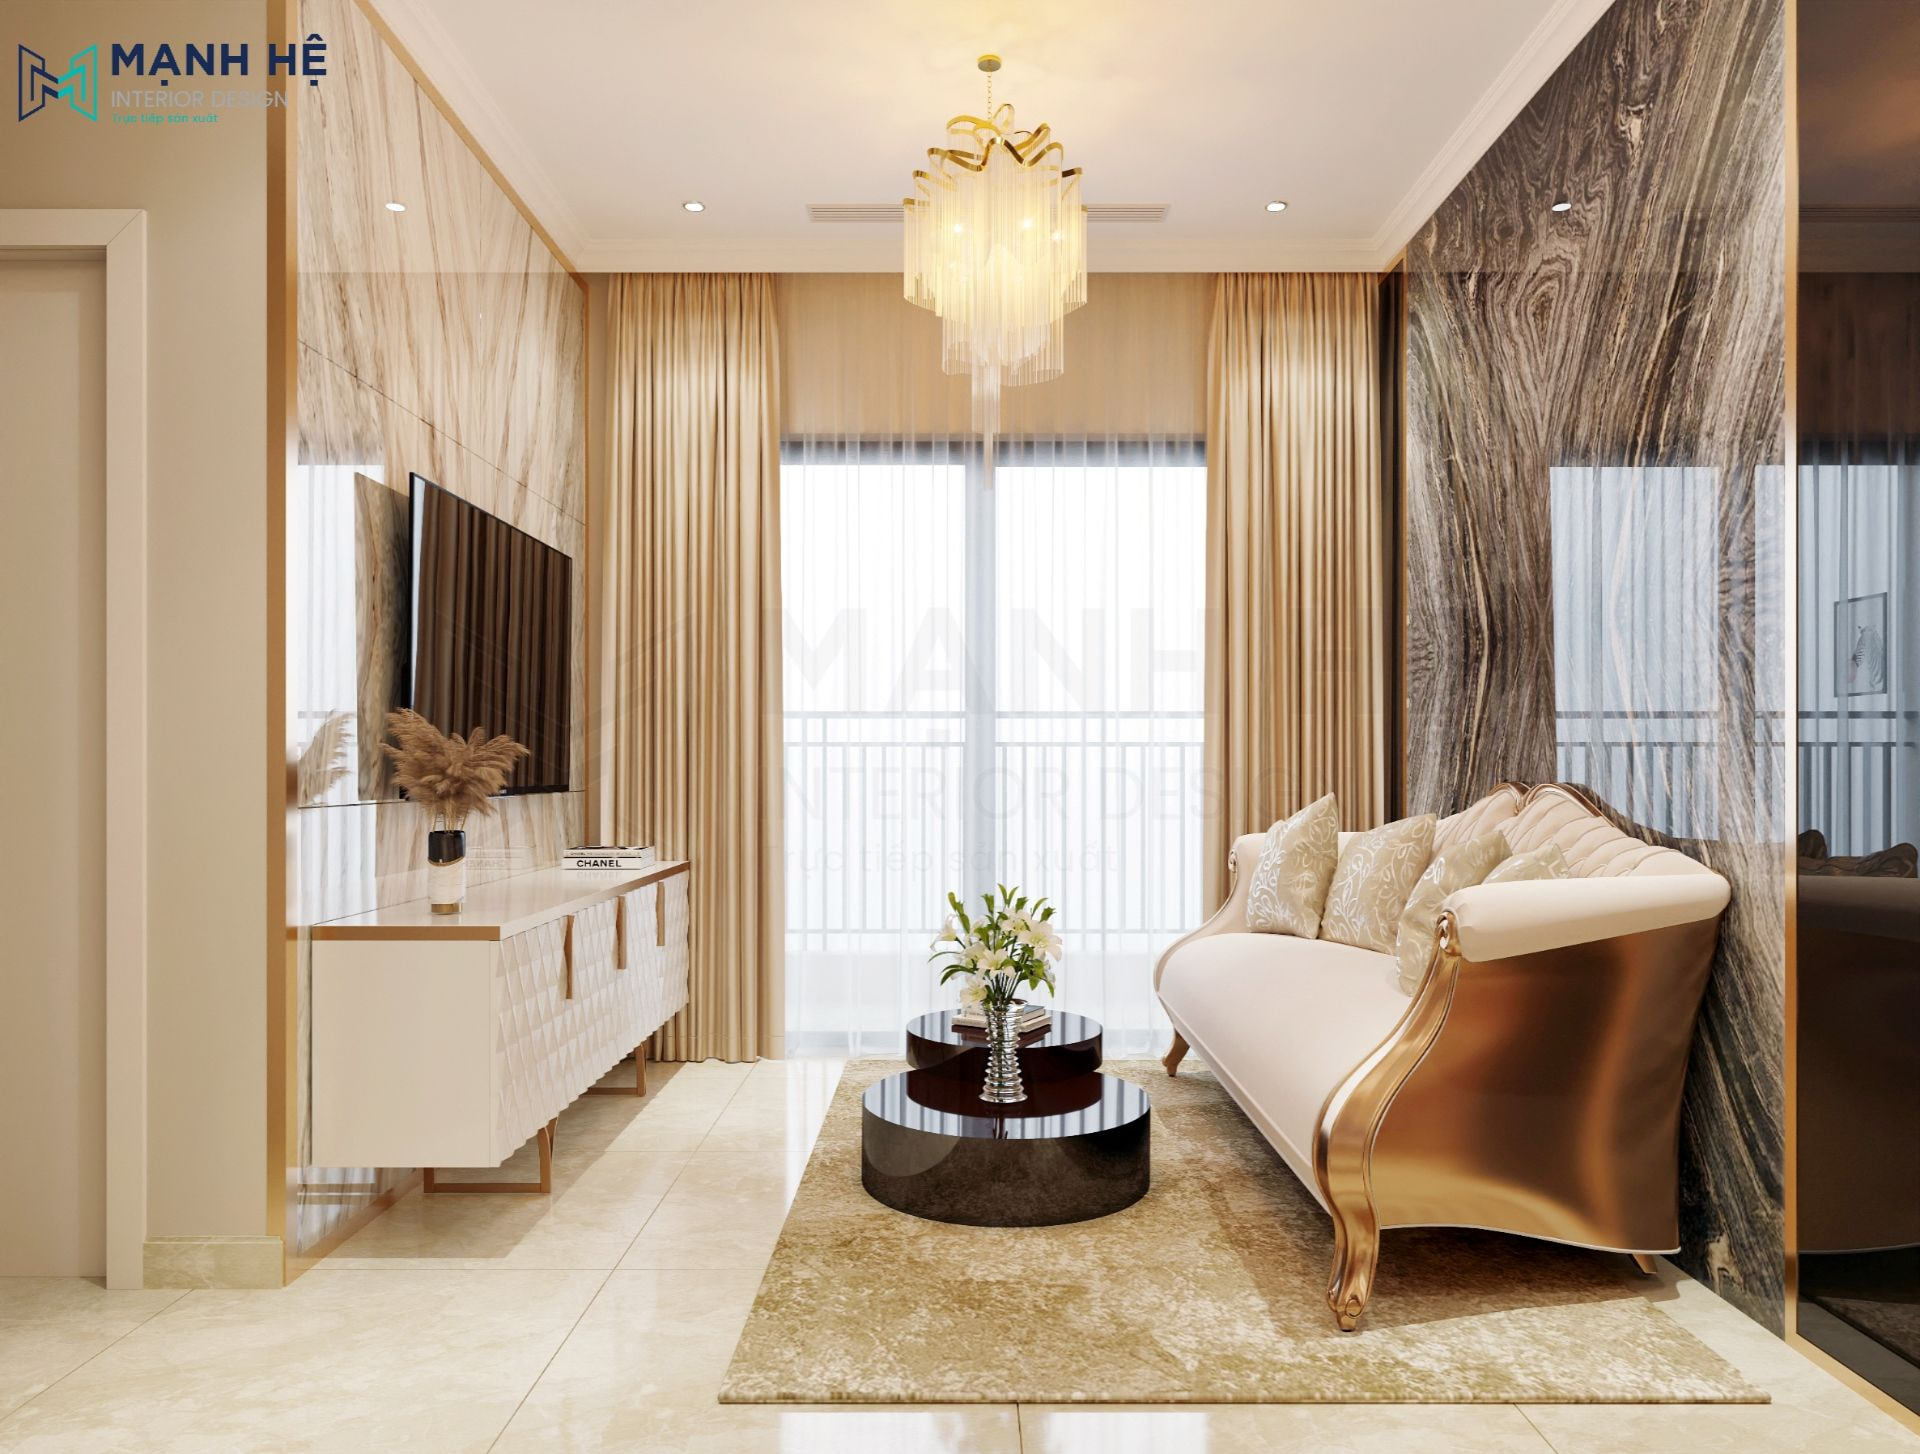 Tổng thể không gian phòng khách sang trọng, đẳng cấp theo phong cách luxury